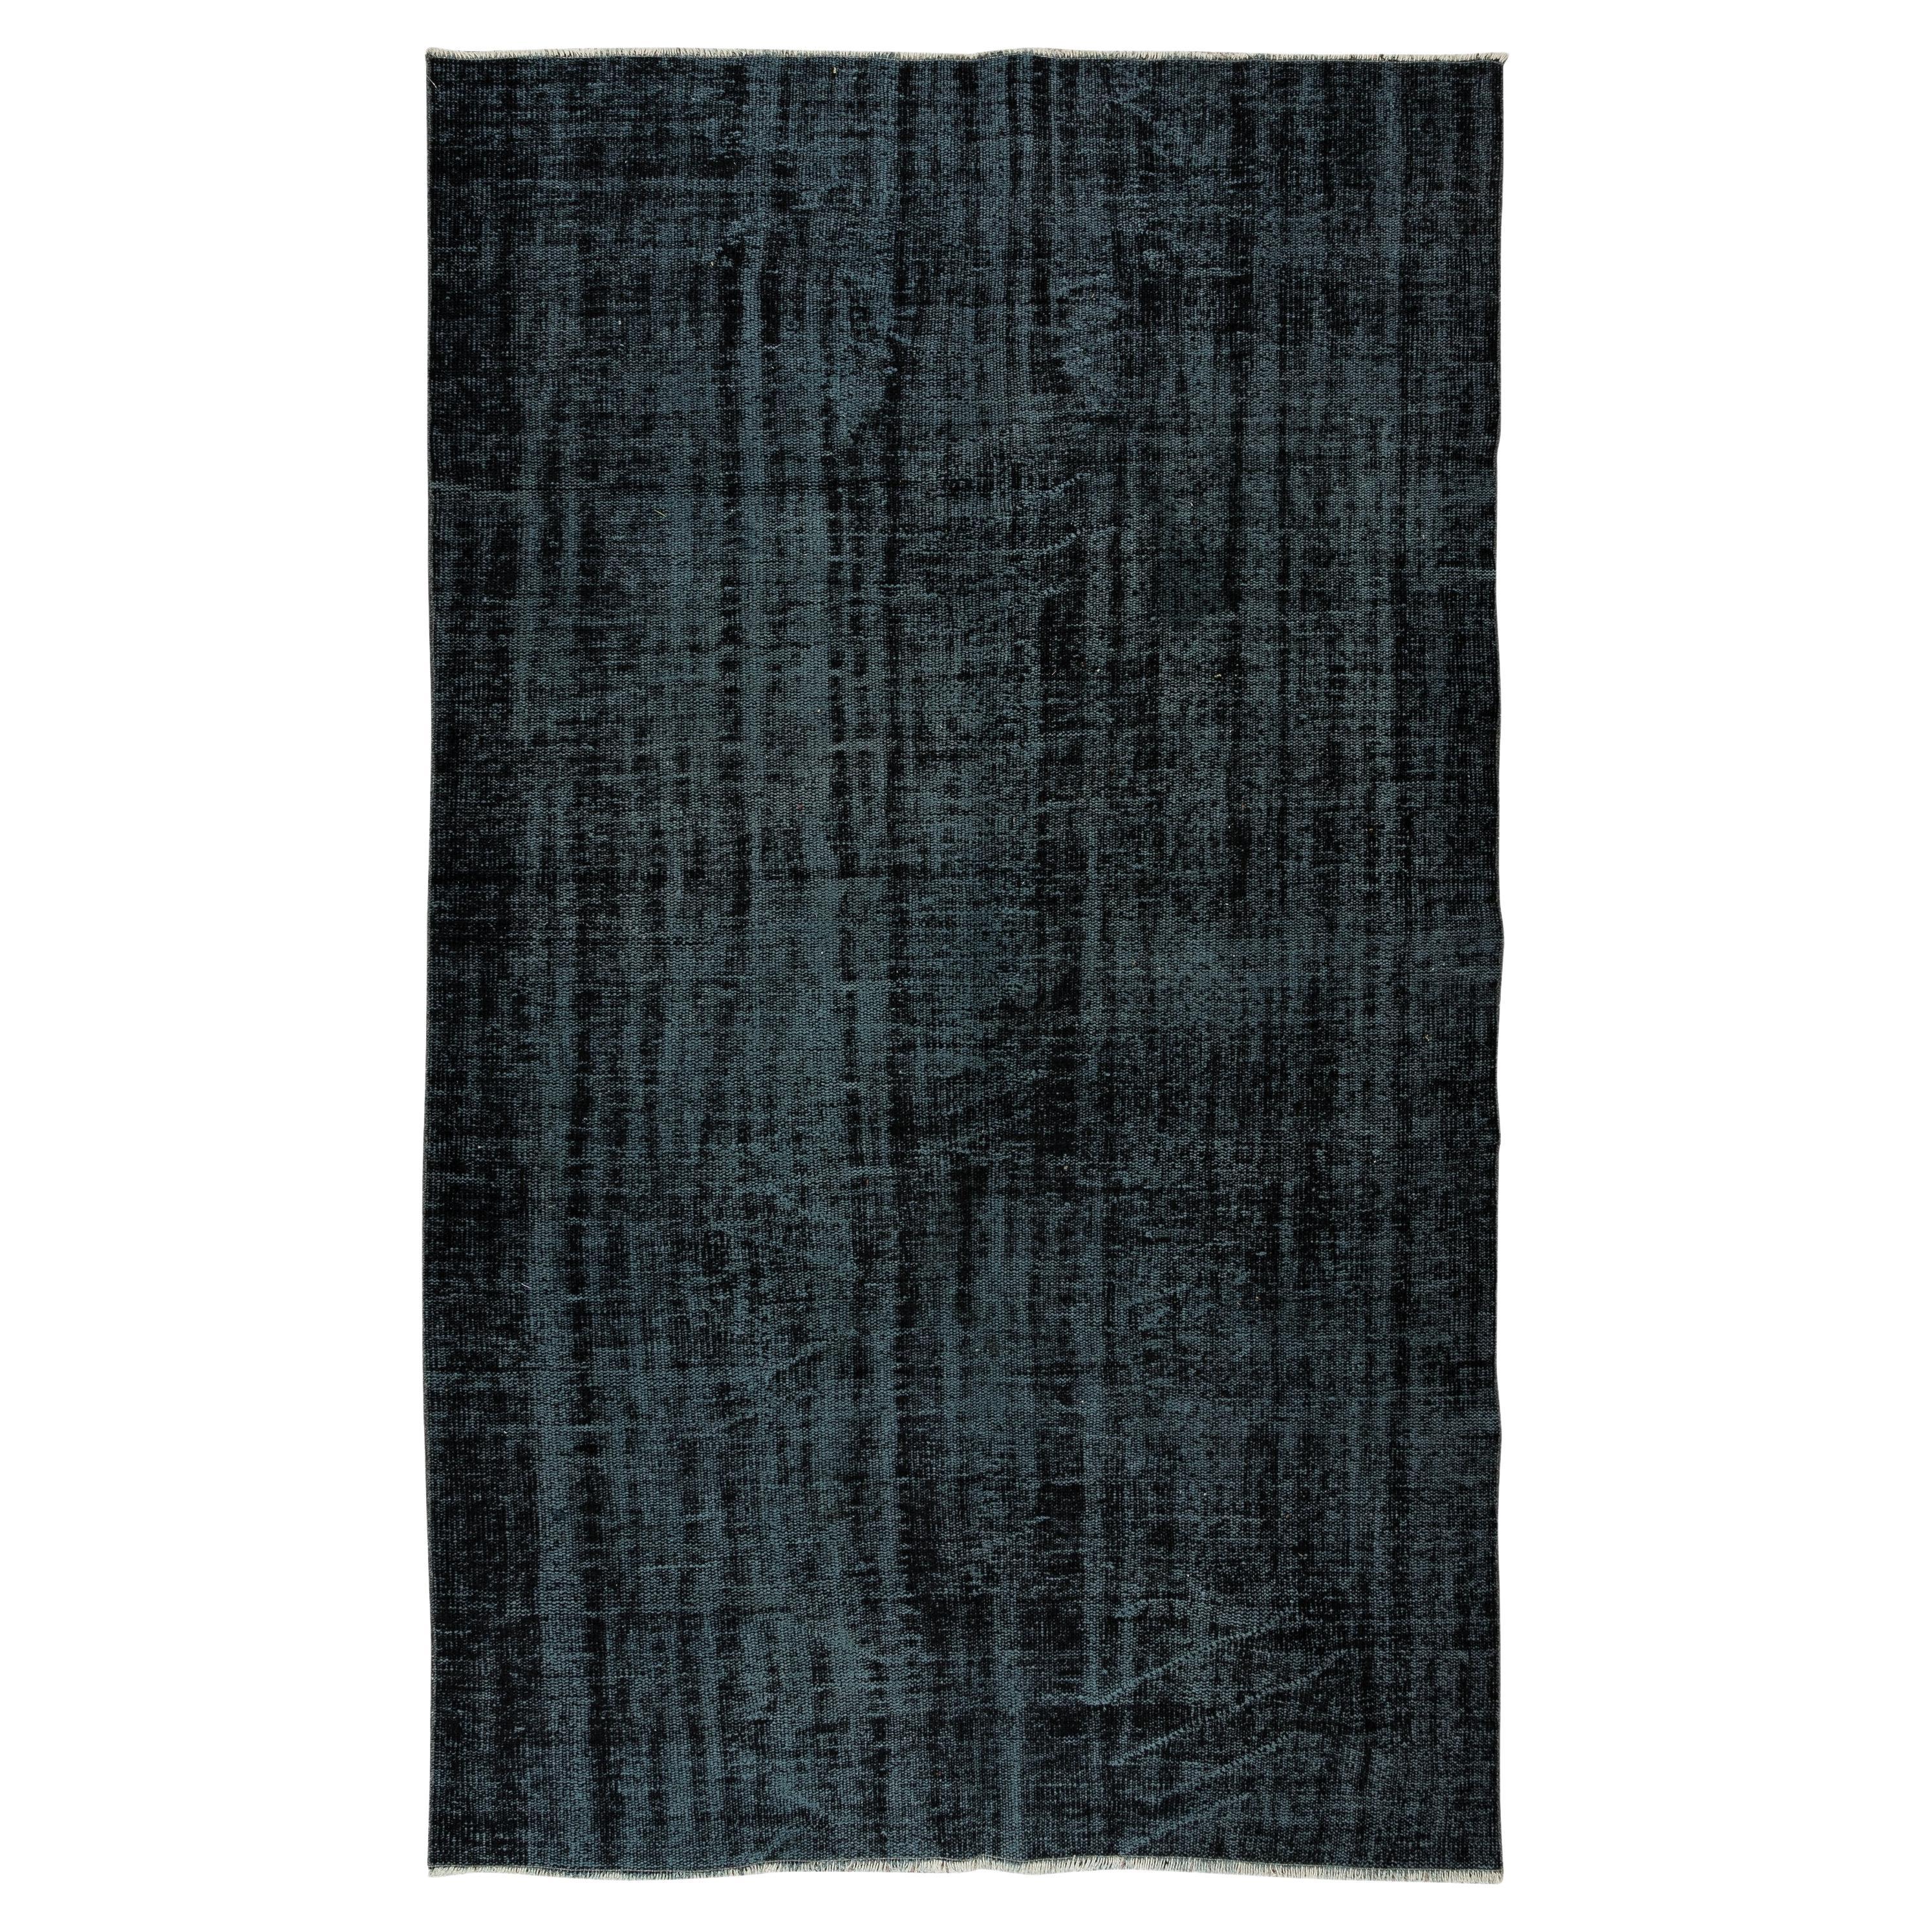 Tapis moderne d'Anatolie teinté à la main noir, tapis vintage fait main